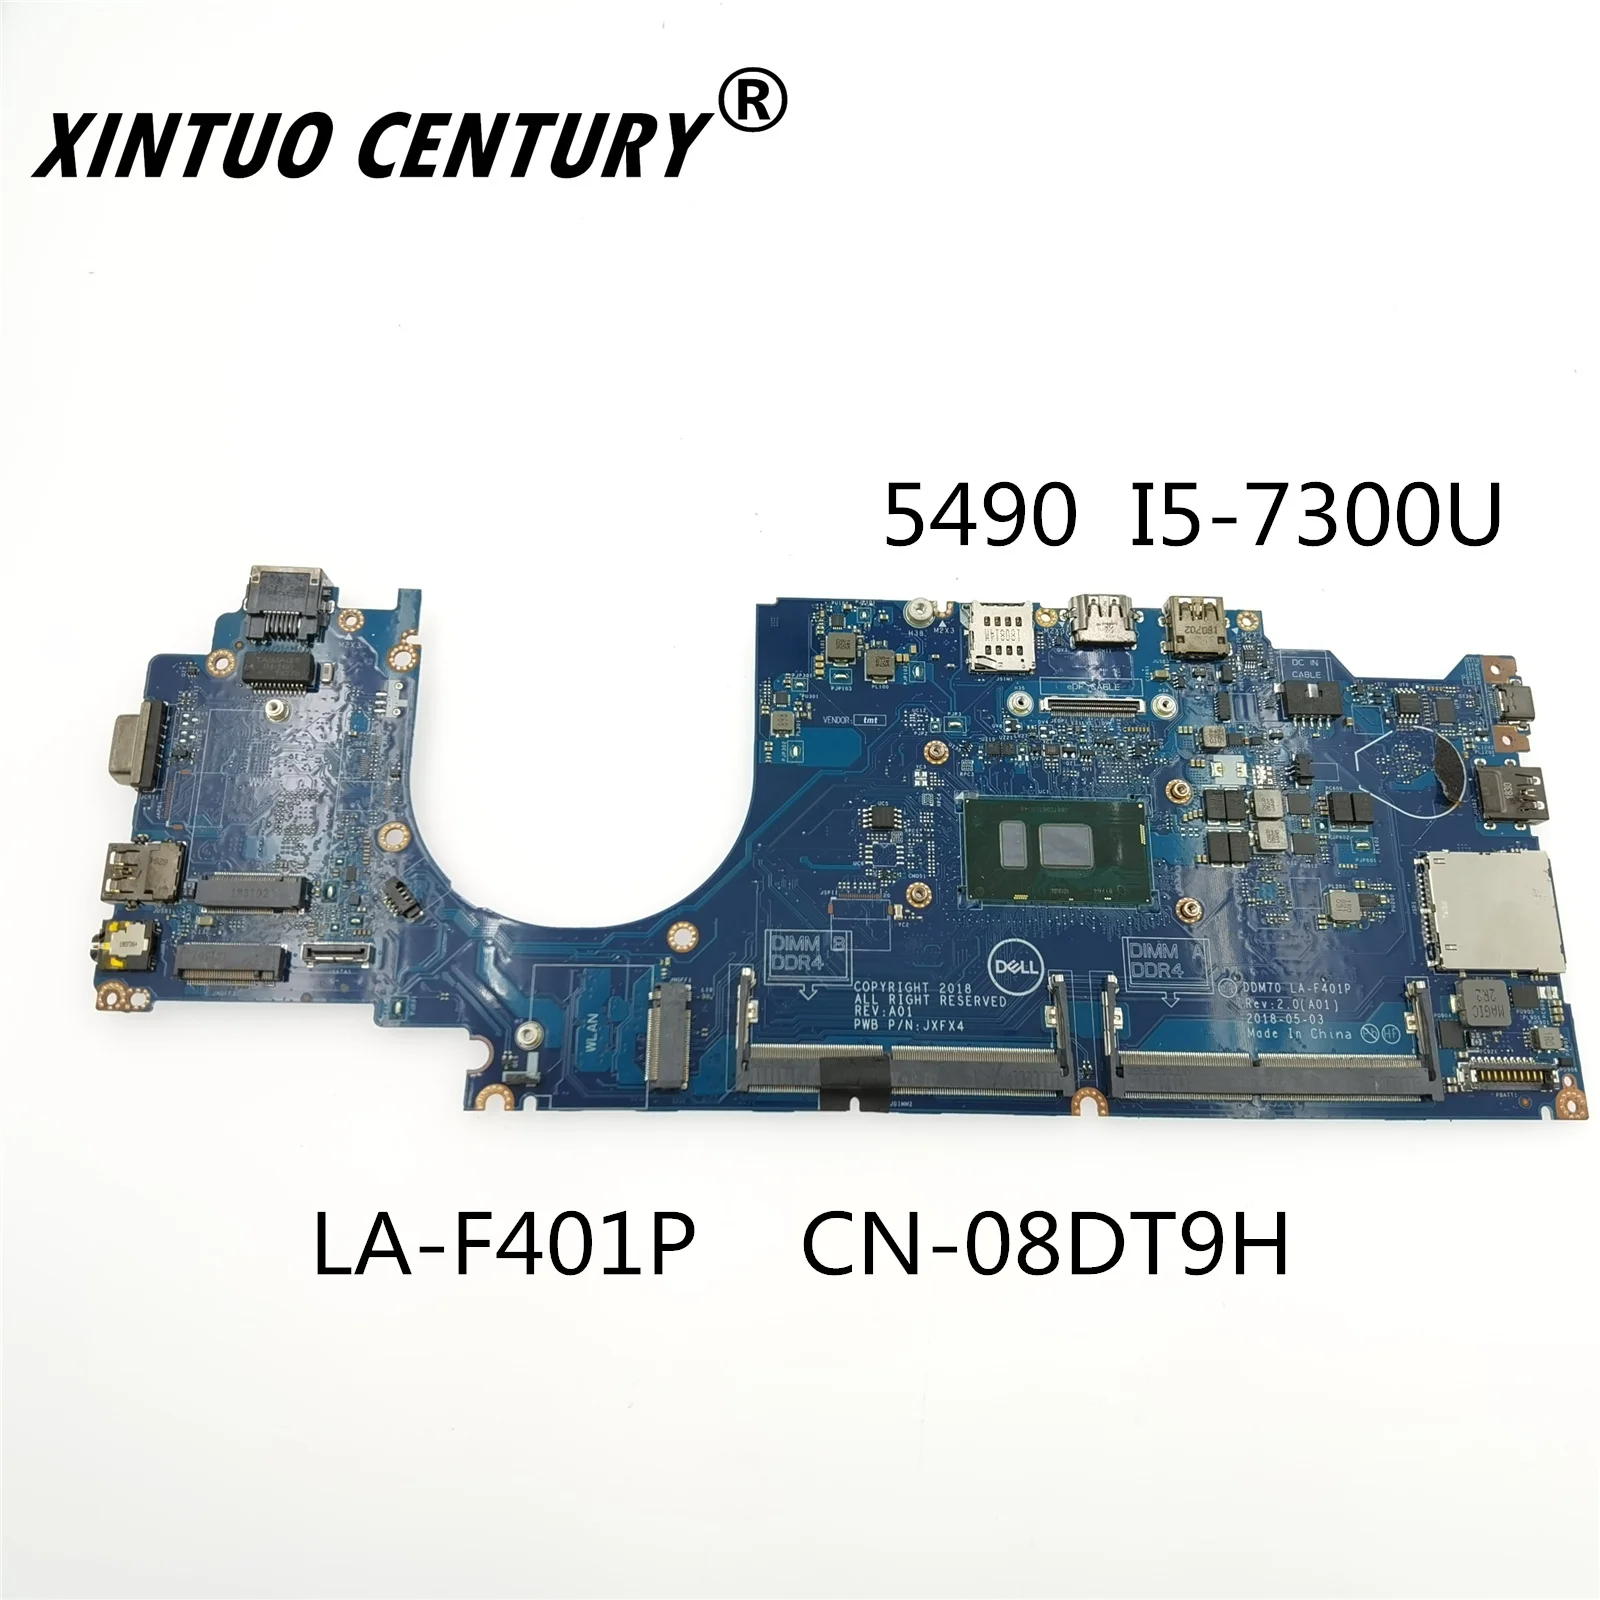 

CN-08DT9H 08DT9H 8DT9H For Dell Latitude 5490 Motherboard I5-7300U 2.6 GHz Tested